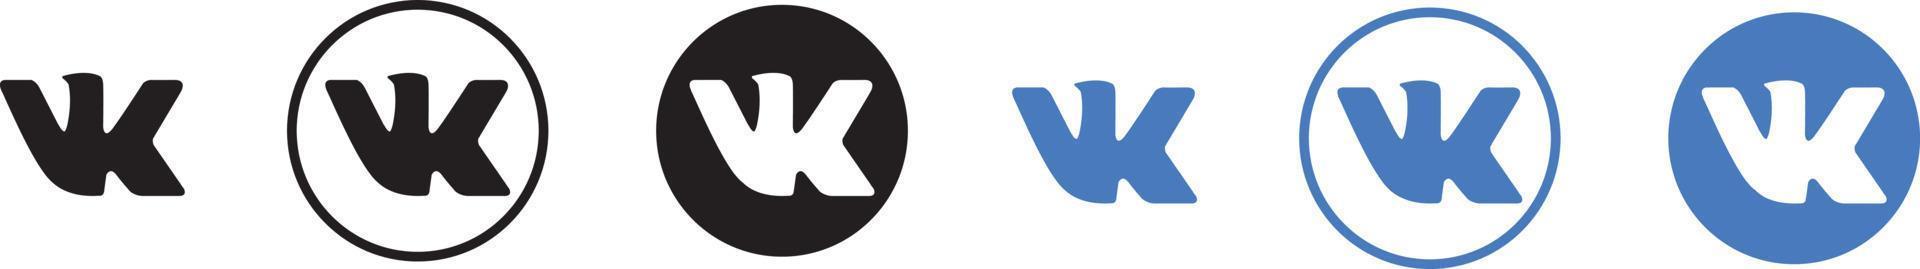 logo vkontakte mis en forme différente sur fond blanc vecteur